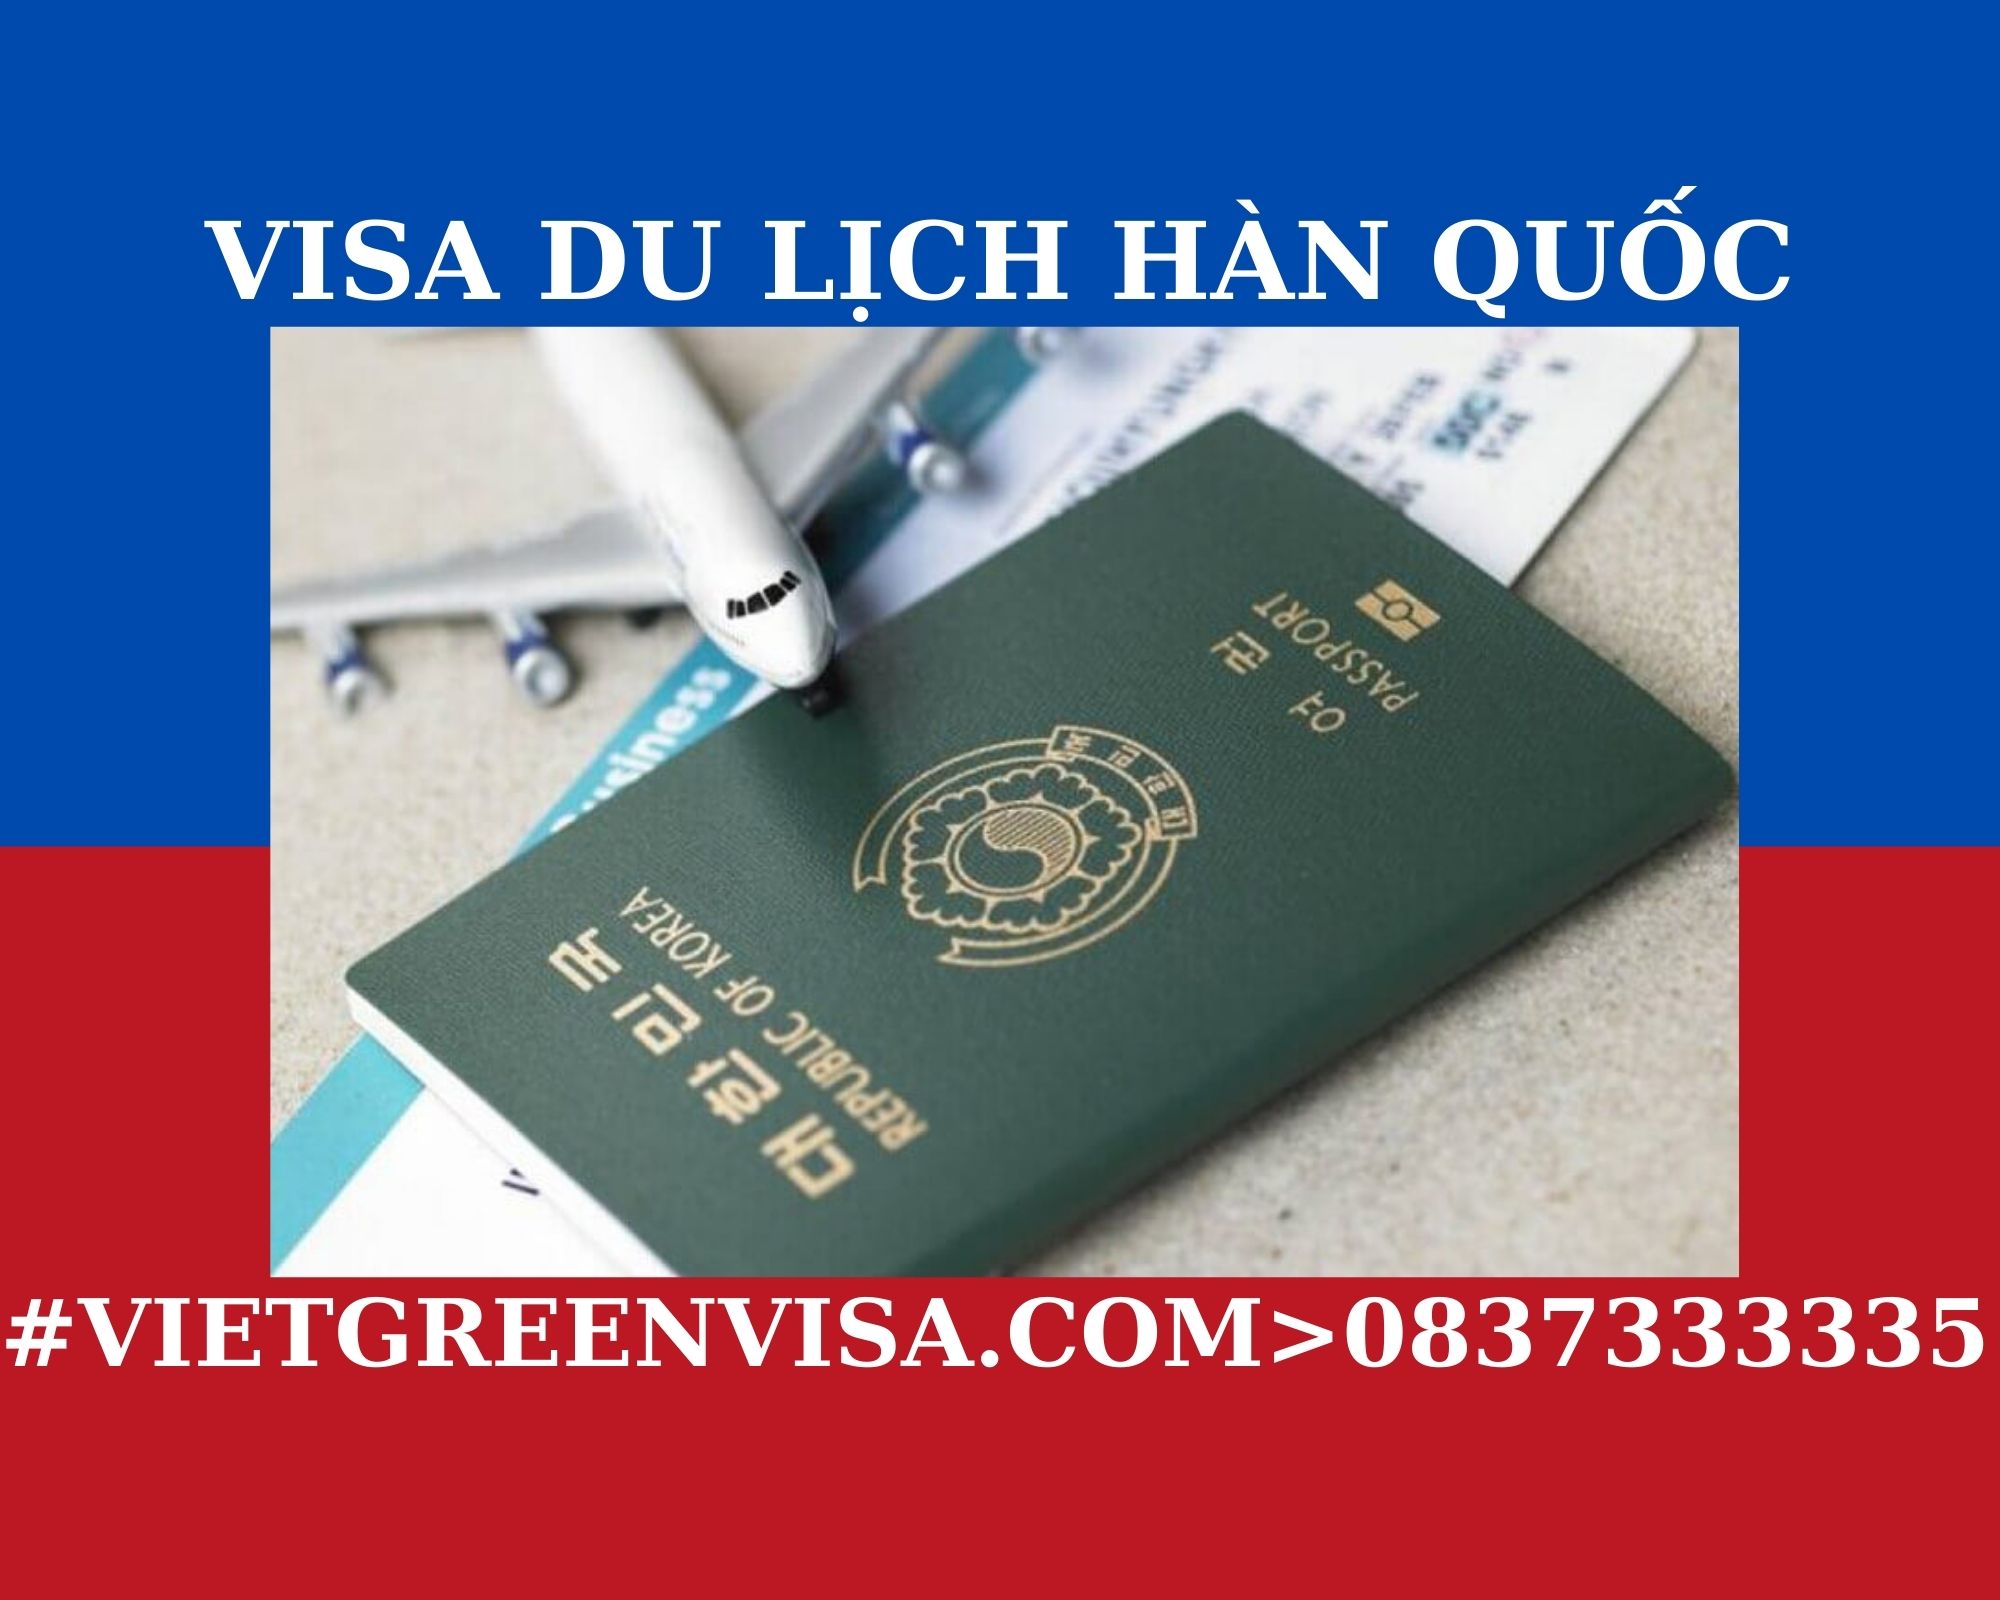 Dịch vụ xin Visa Hàn Quốc du lịch uy tín. Du Lịch Xanh